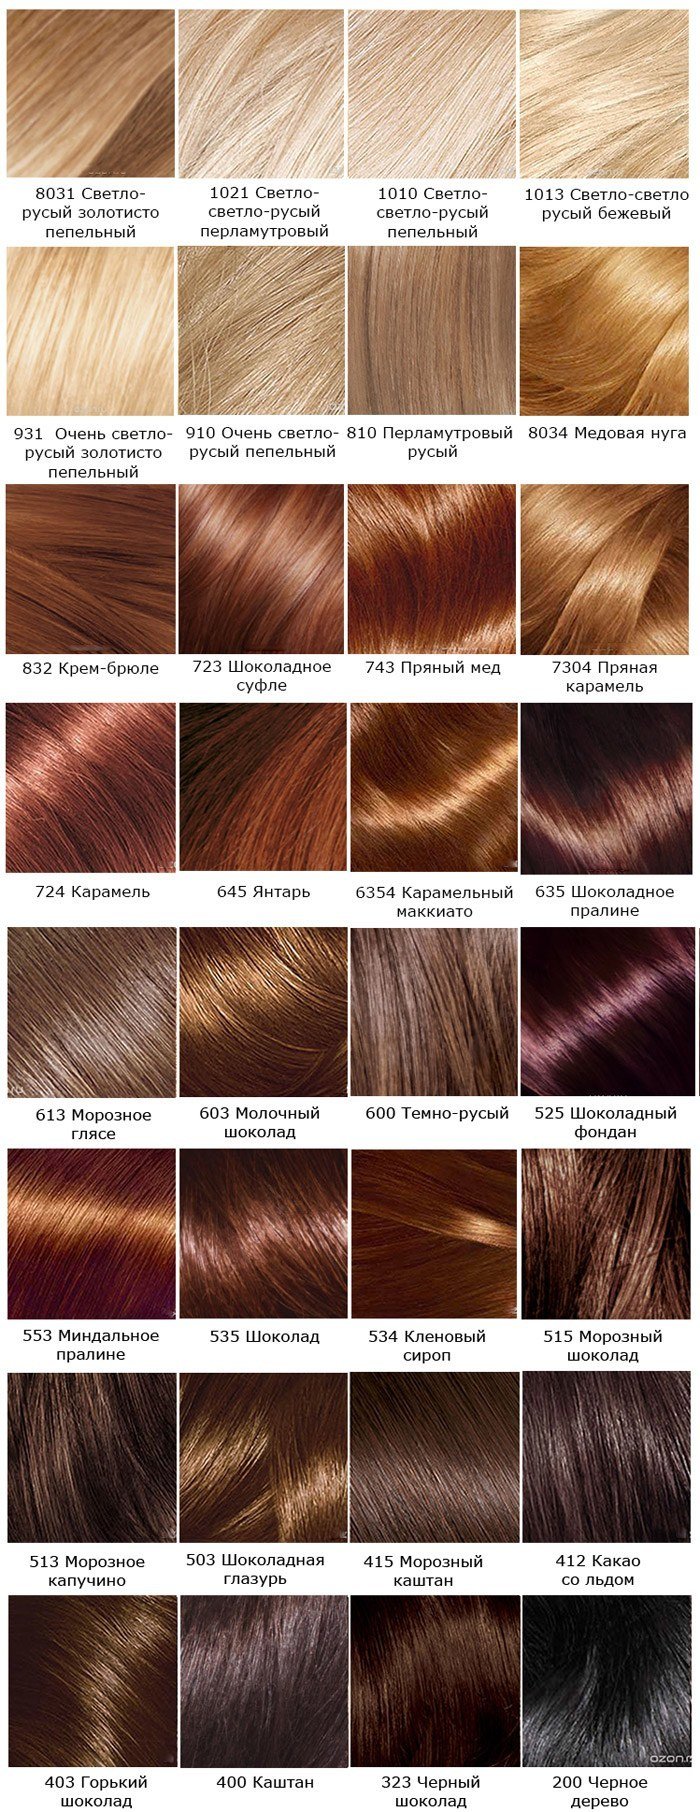 920a78e2e2c8cdd558053a34608ed8c9 Фарба для волосся Лореаль: палітра кольорів (фото)